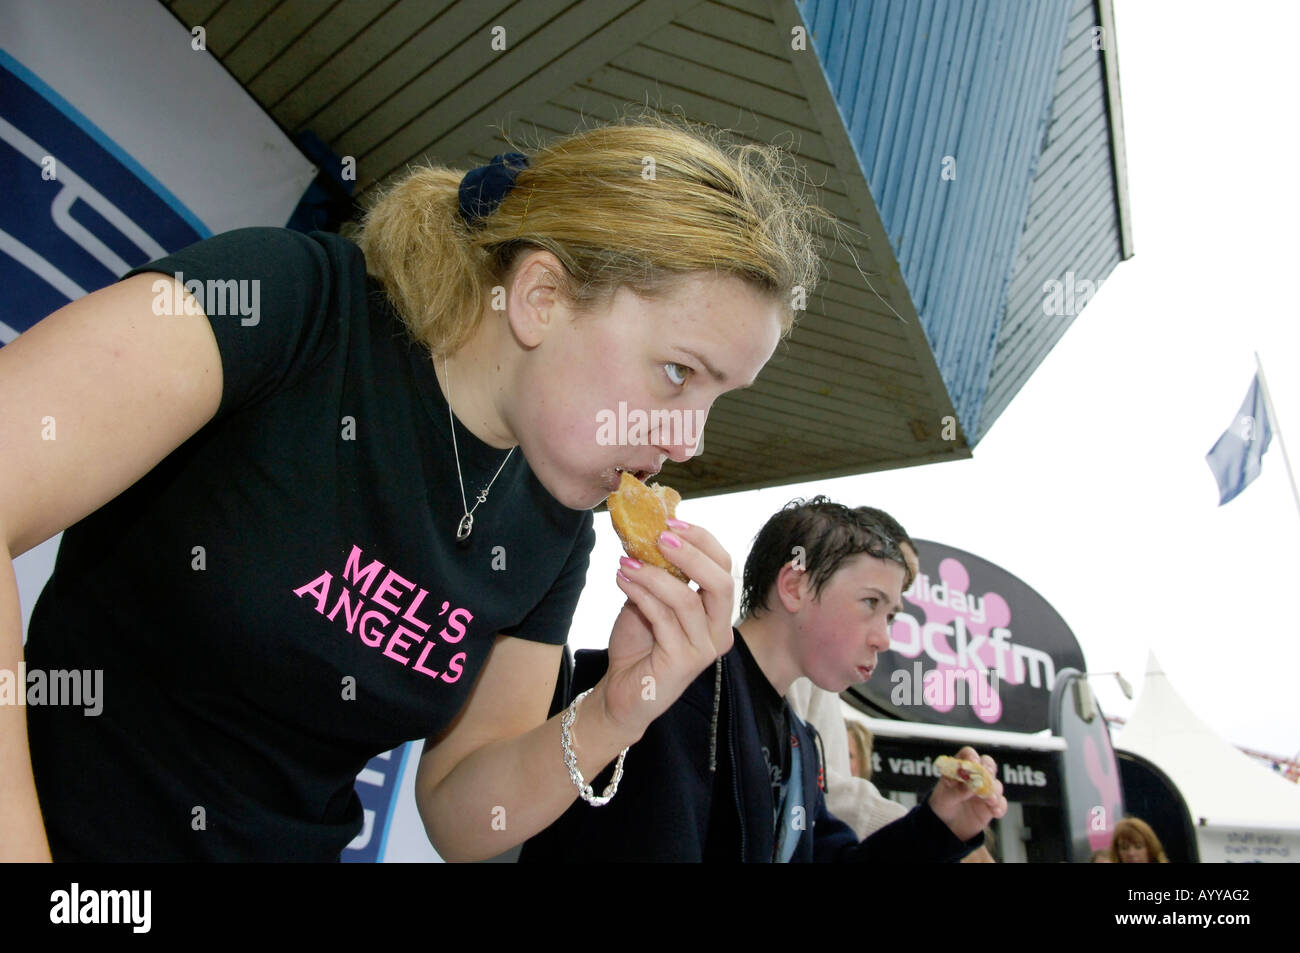 Eating donut concours tenu au parc d'attractions Pleasure Beach, Blackpool, Royaume-Uni Banque D'Images